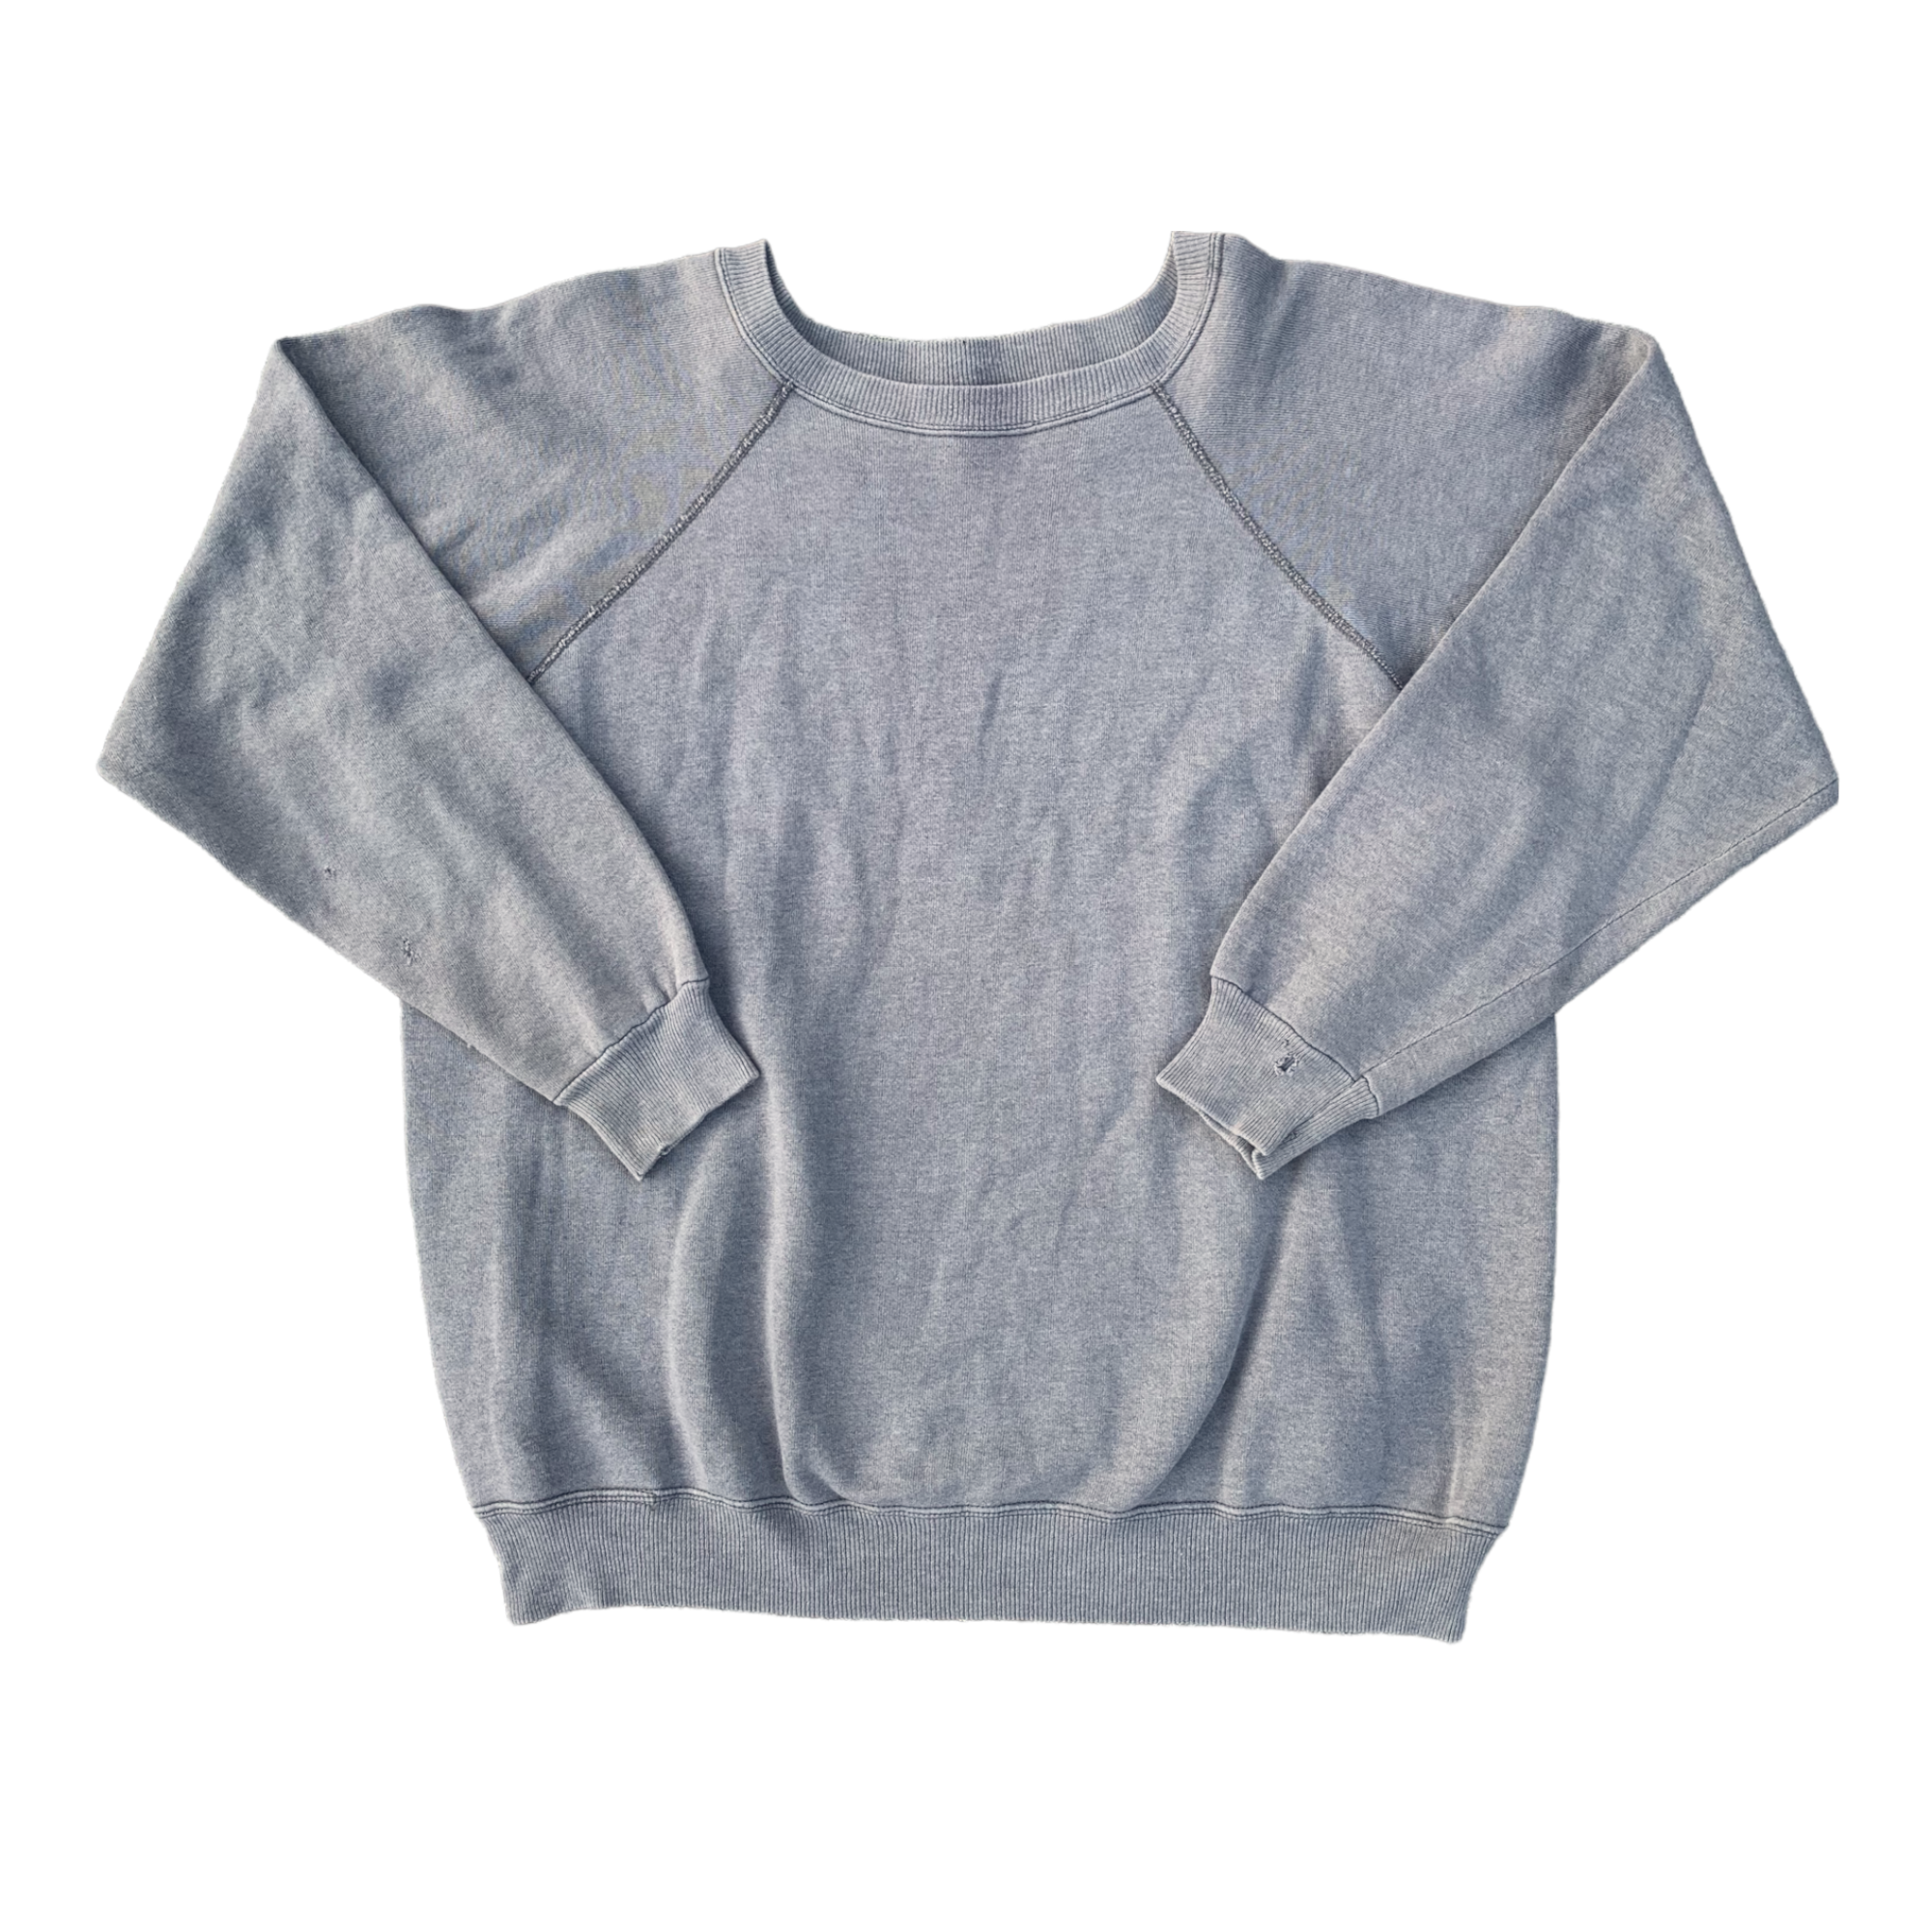 90s Hanes Raglan Cut Crewneck Sweatshirt - Faded Black/Charcoal - L/XL